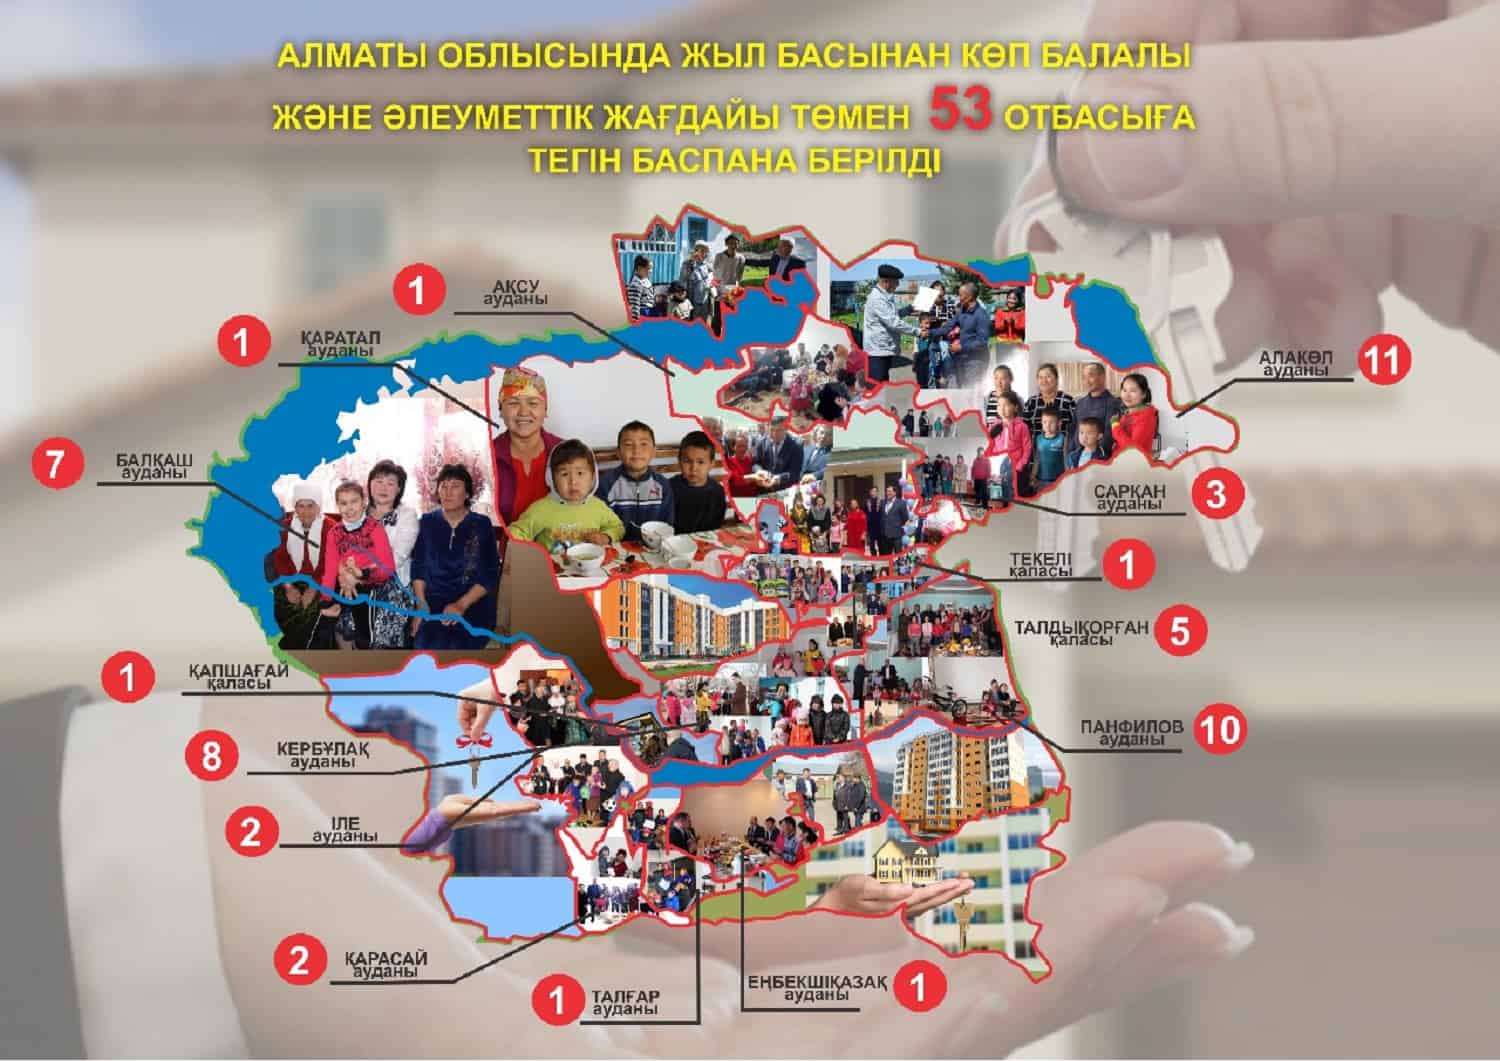 Алматы облысында жыл басынан көпбалалы және әлеуметтік жағдайы төмен 53 отбасыға тегін баспана берілді